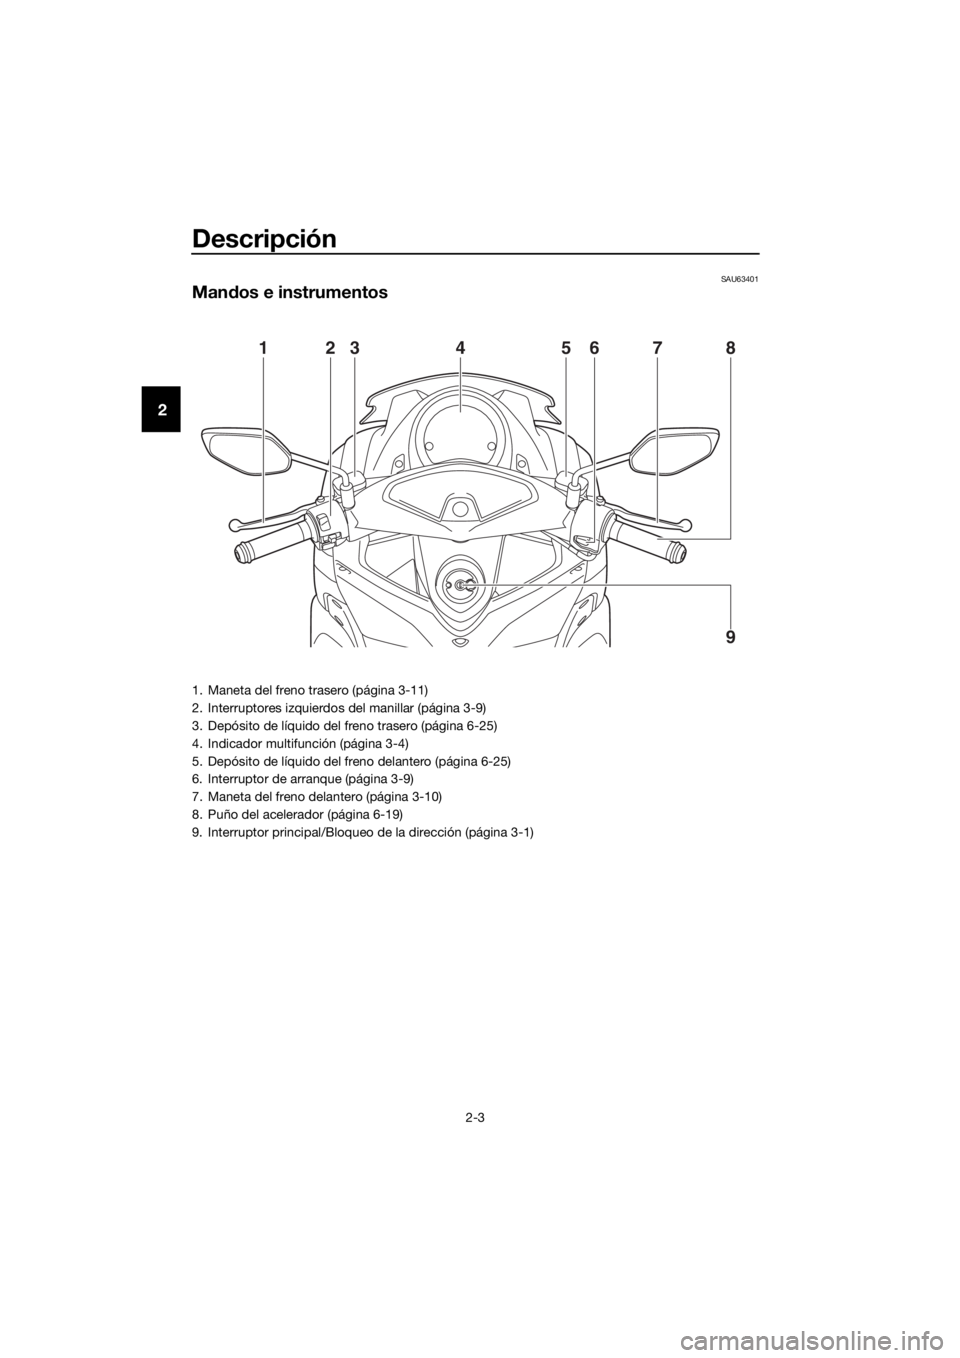 YAMAHA NMAX 125 2017  Manuale de Empleo (in Spanish) Descripción
2-3
2
SAU63401
Mandos e instrumentos
12376854
9
1. Maneta del freno trasero (página 3-11)
2. Interruptores izquierdos del manillar (página 3-9)
3. Depósito de líquido del freno traser